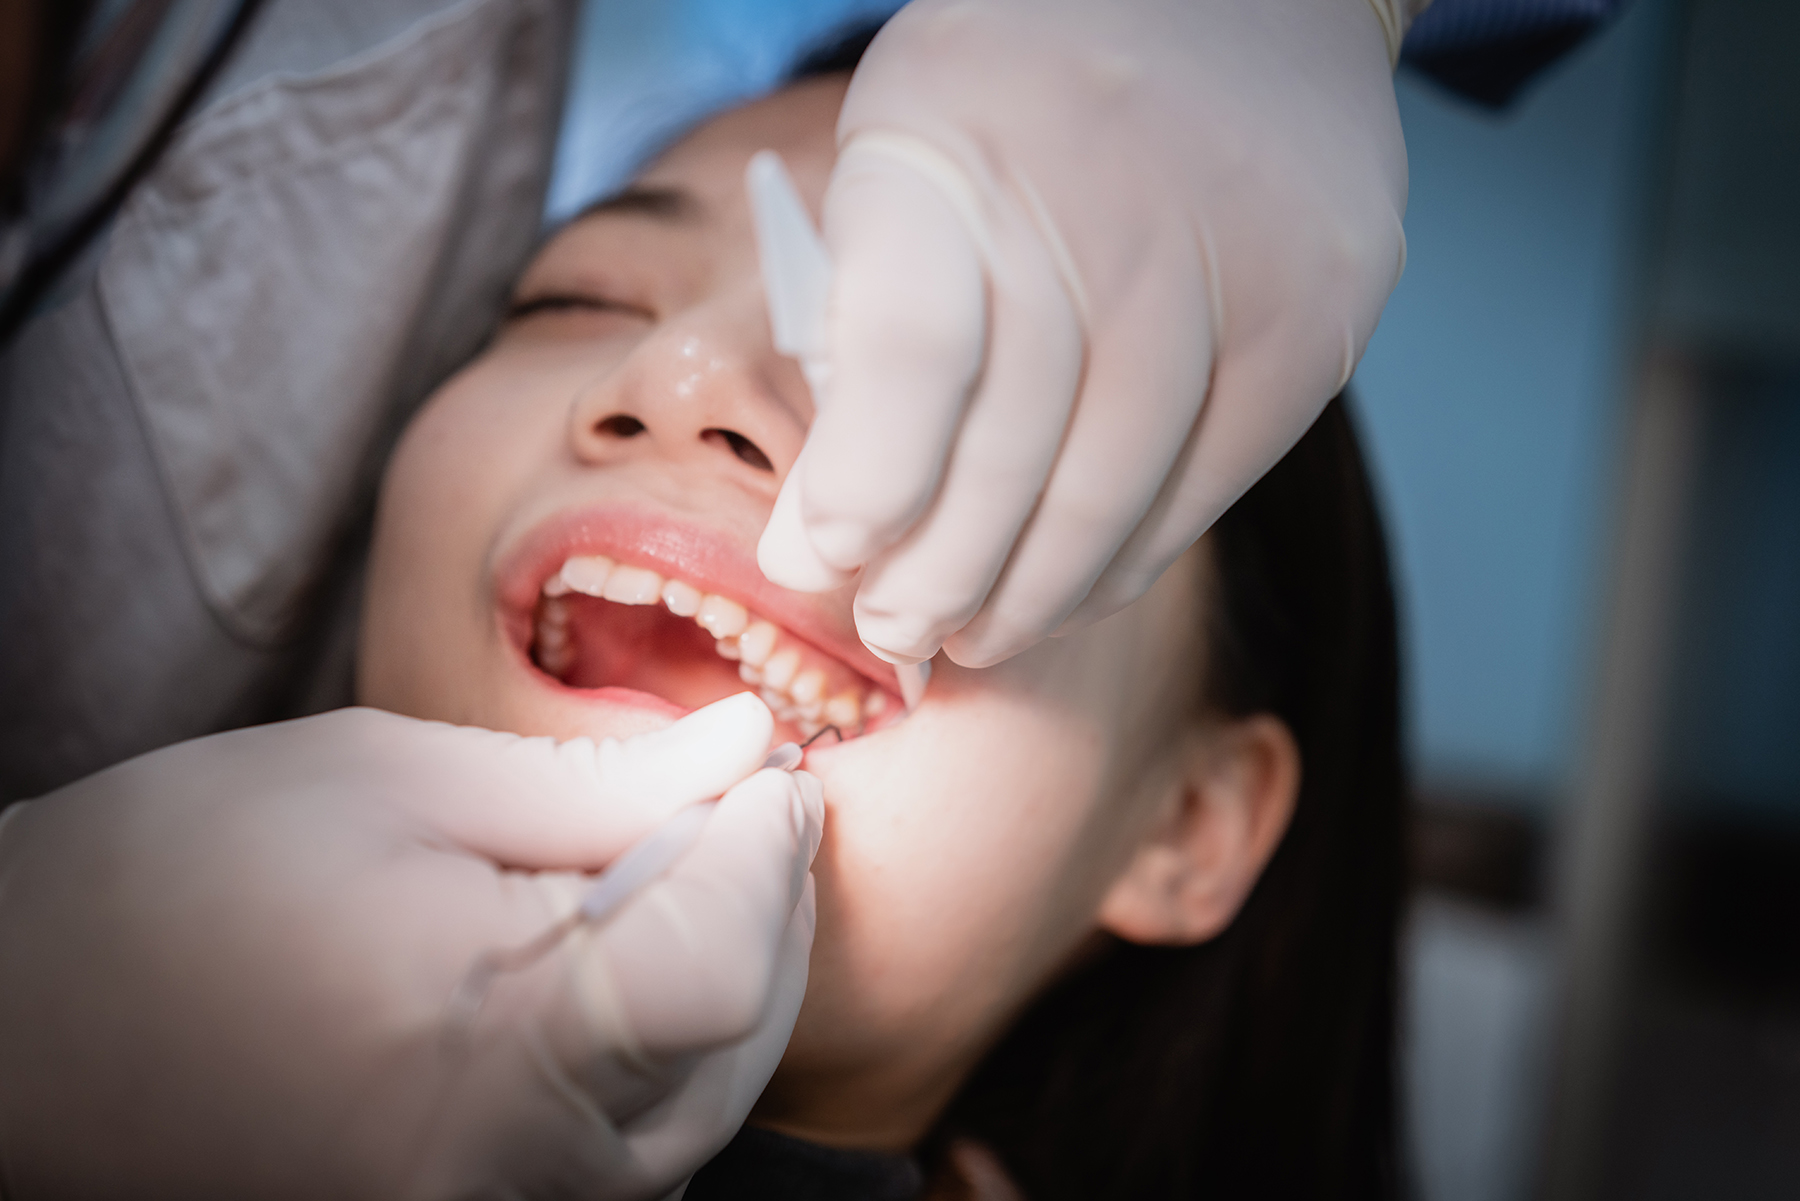 Dental extractions procedure in Vero Beach, FL